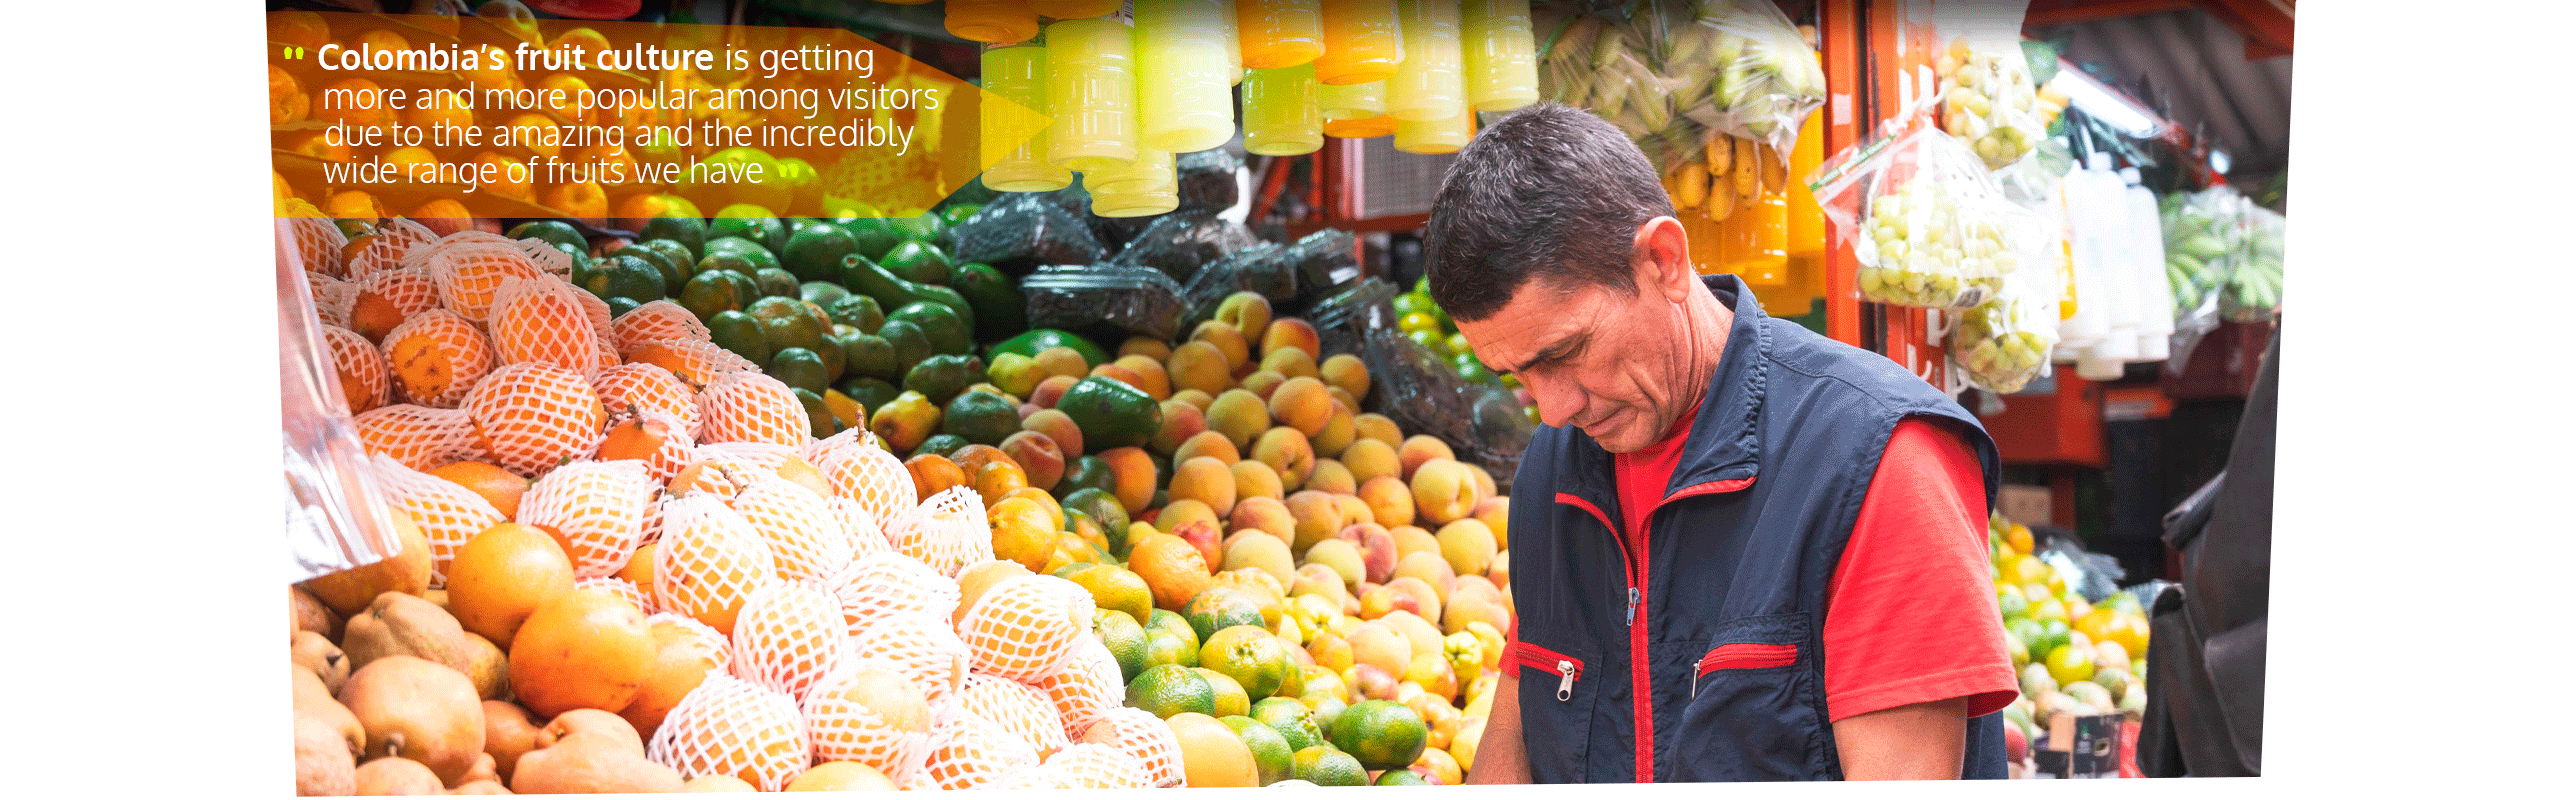 Beyond Colombia Tours | Tour: Exotic Fruit Tour at Paloquemao Market